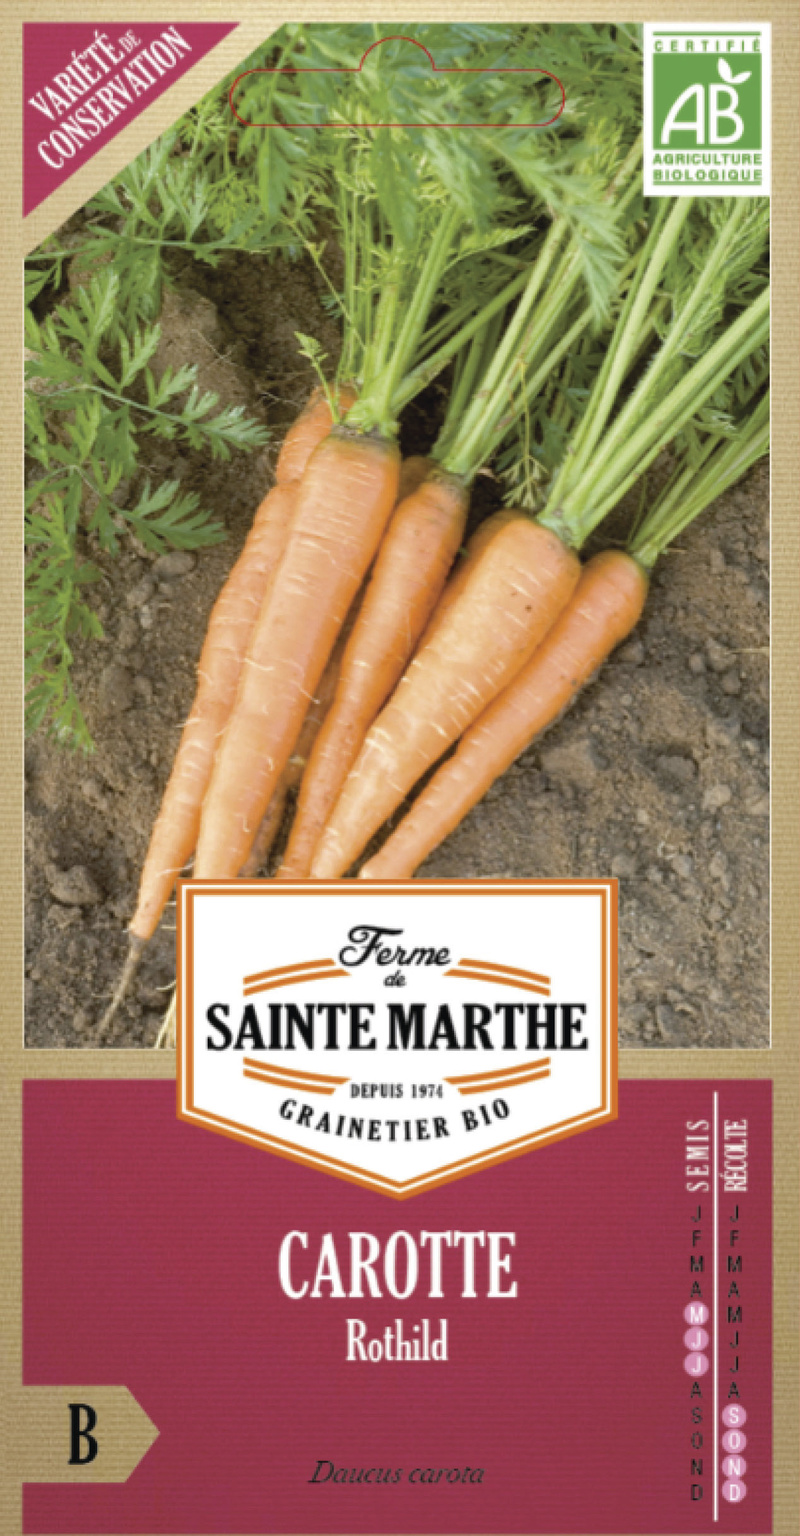 carotte rothild bio la ferme de sainte marthe graine semence potager sachet semis - Voir en grand